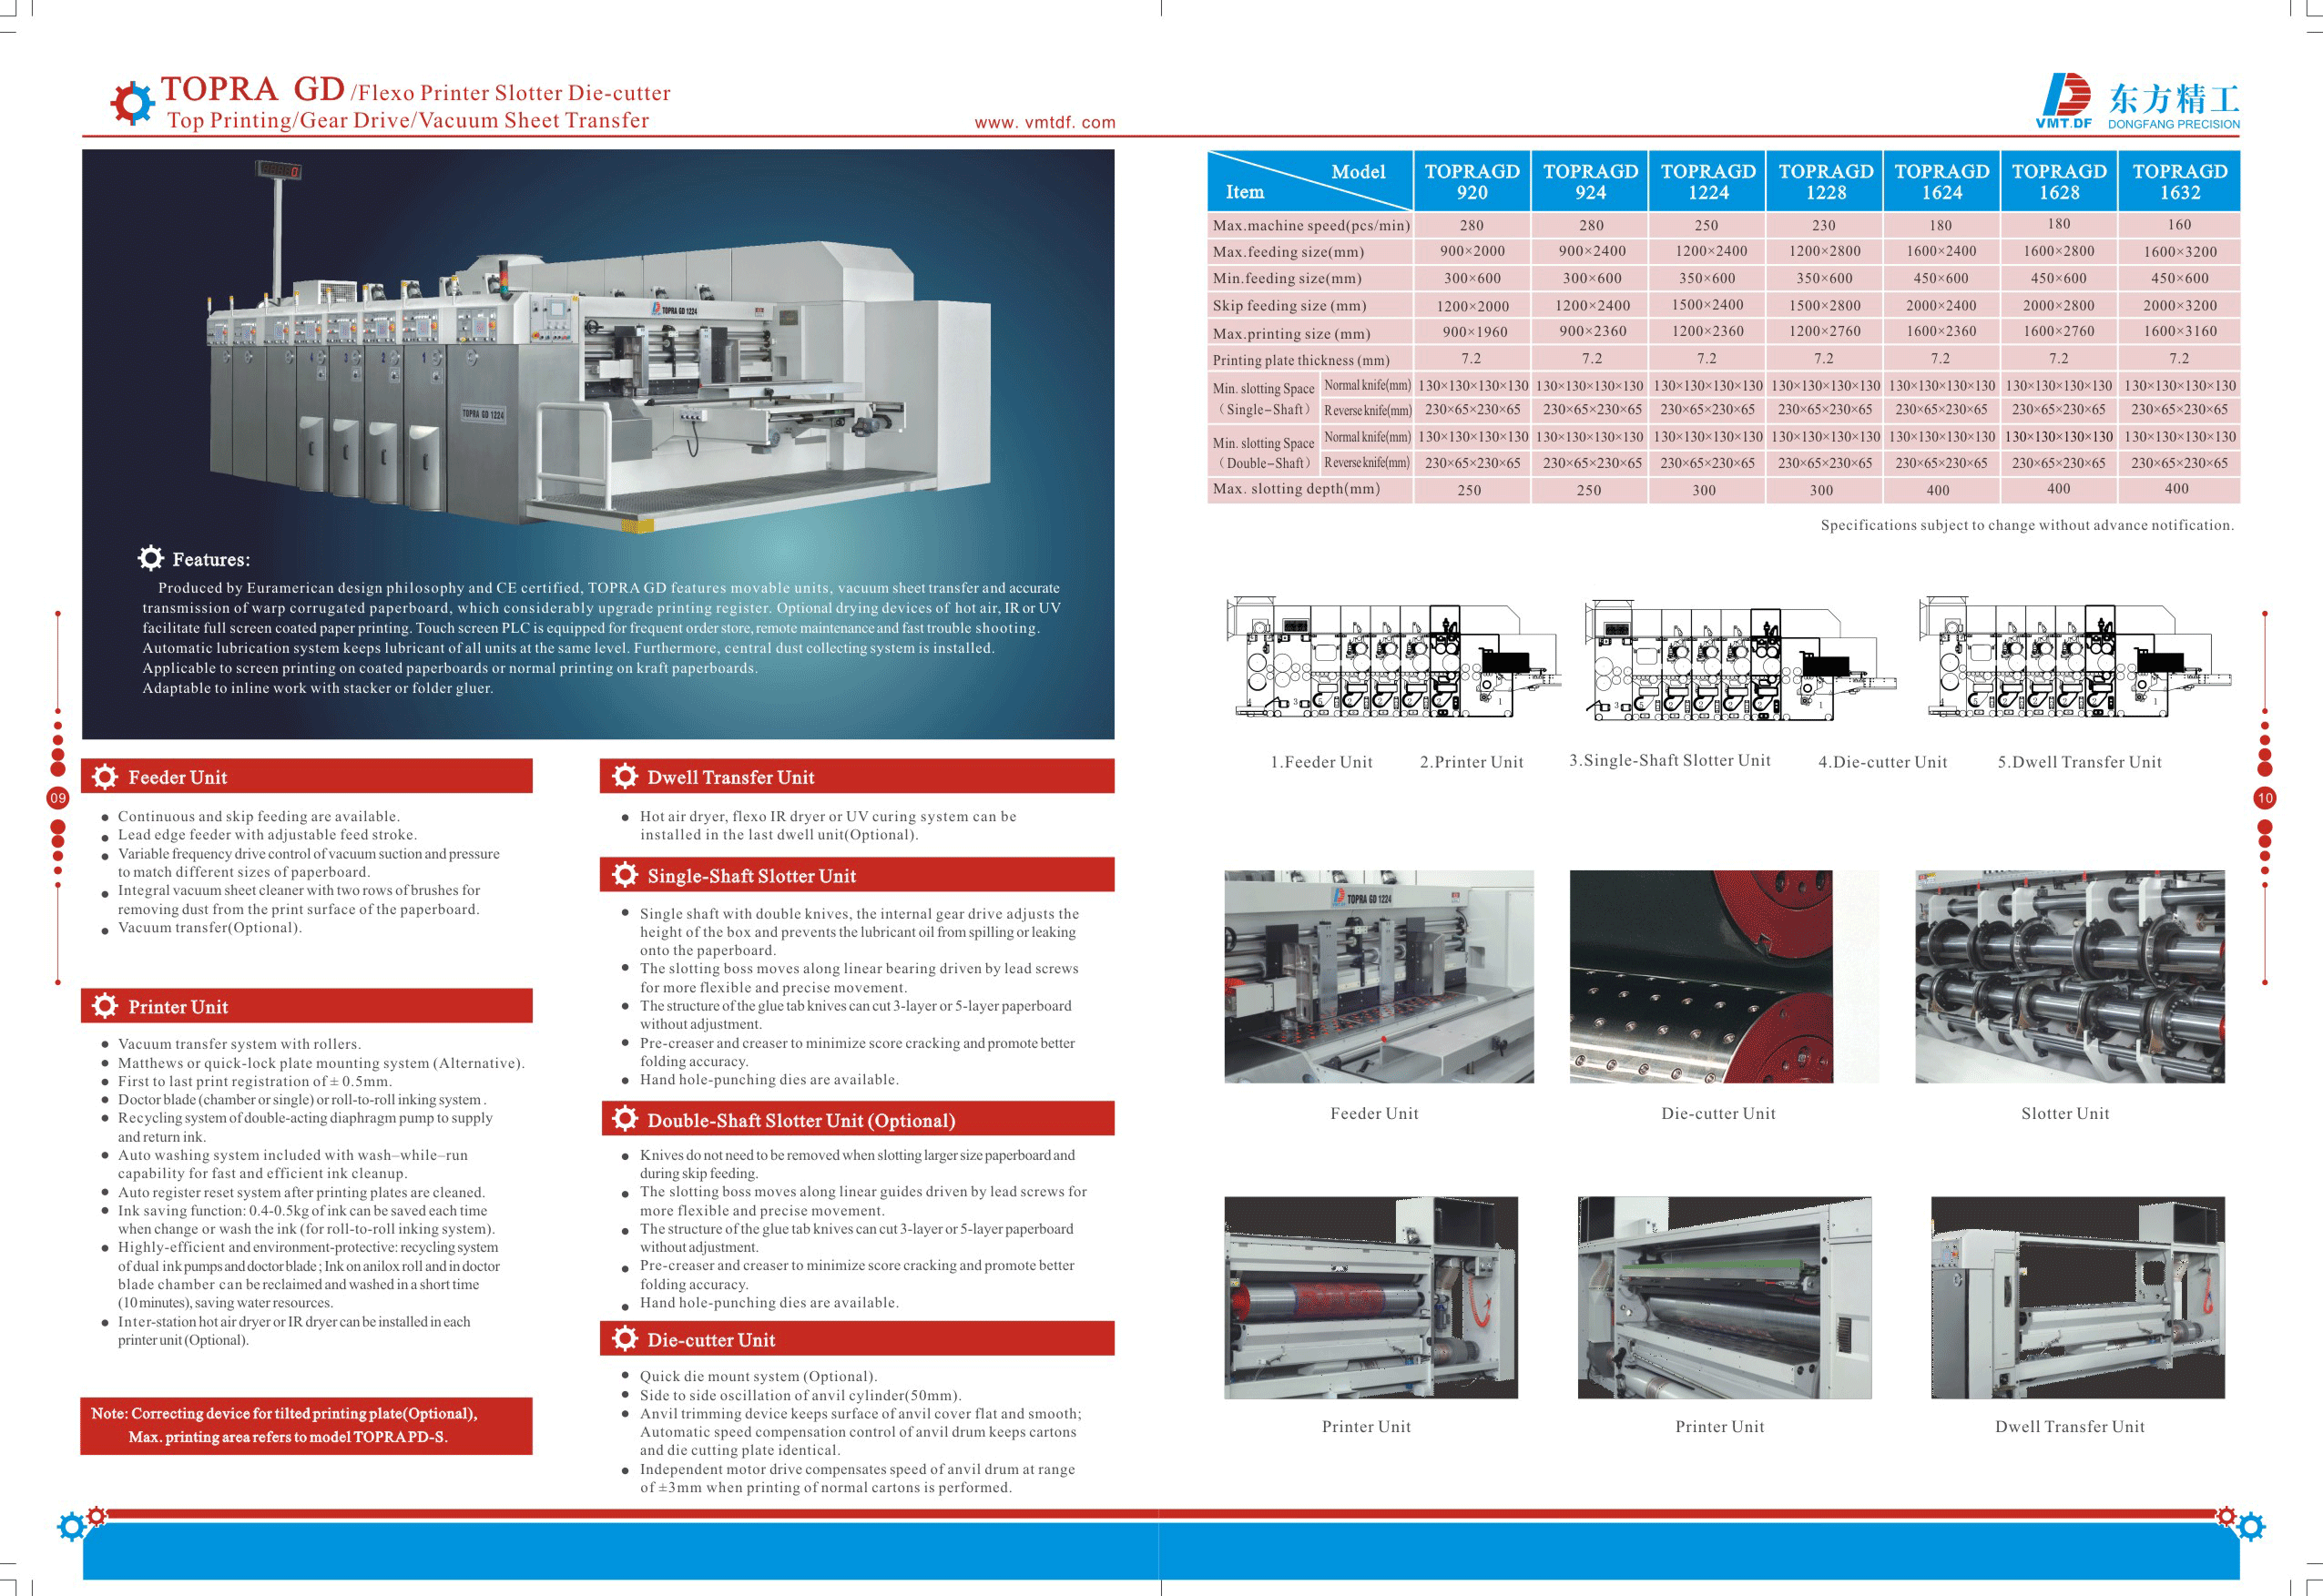 Obtendrá información ampliada sobre la Impresora Flexo Renuradora Troqueladora Topra GD en el folleto de Dong Fang.